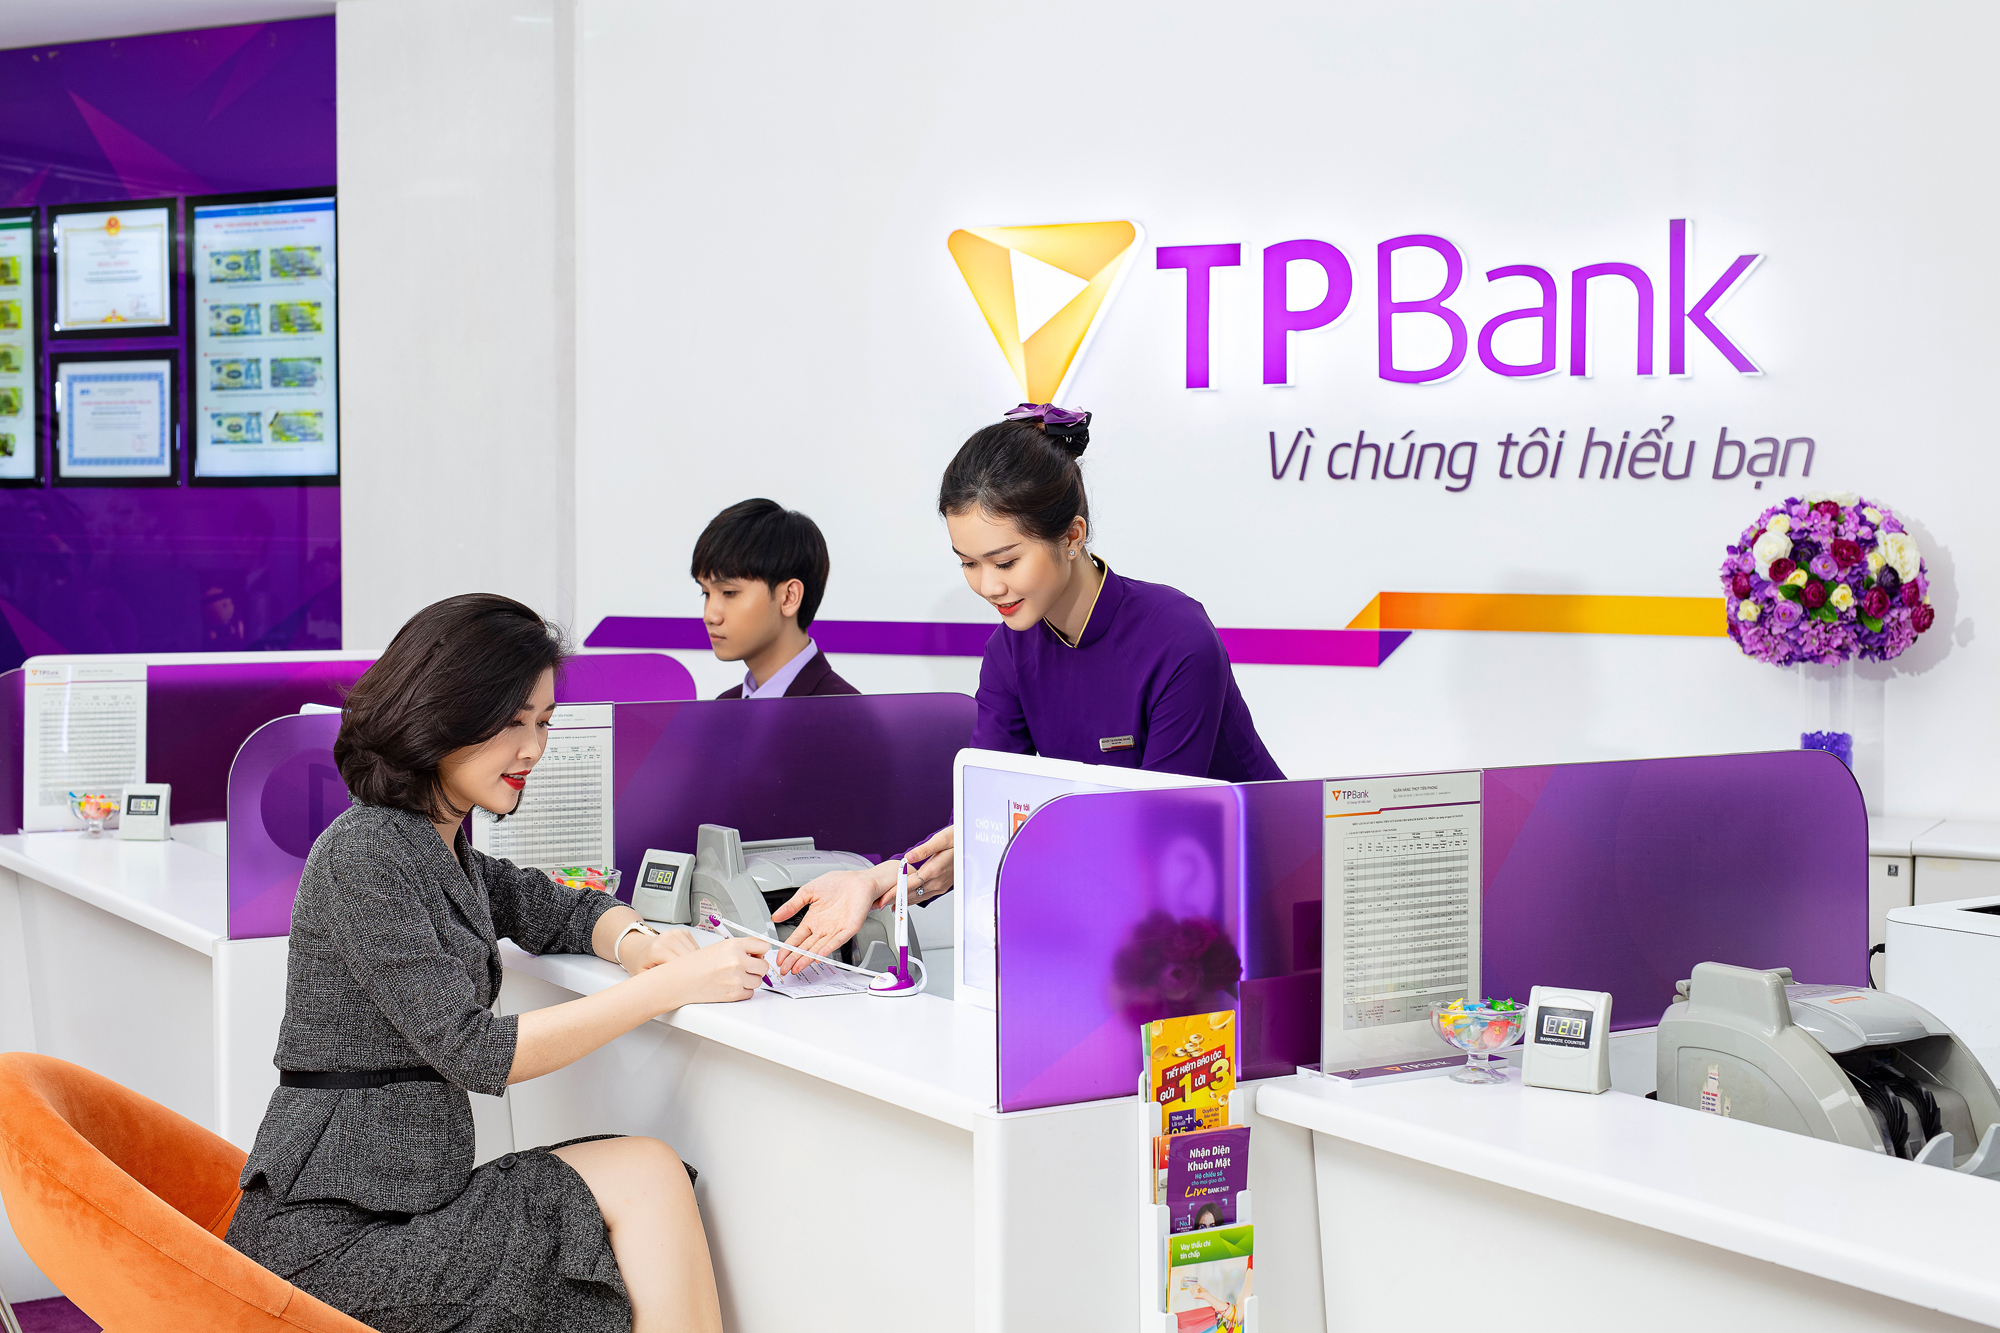 TPBank hoạt động với phương châm “vì chúng tôi hiểu bạn”